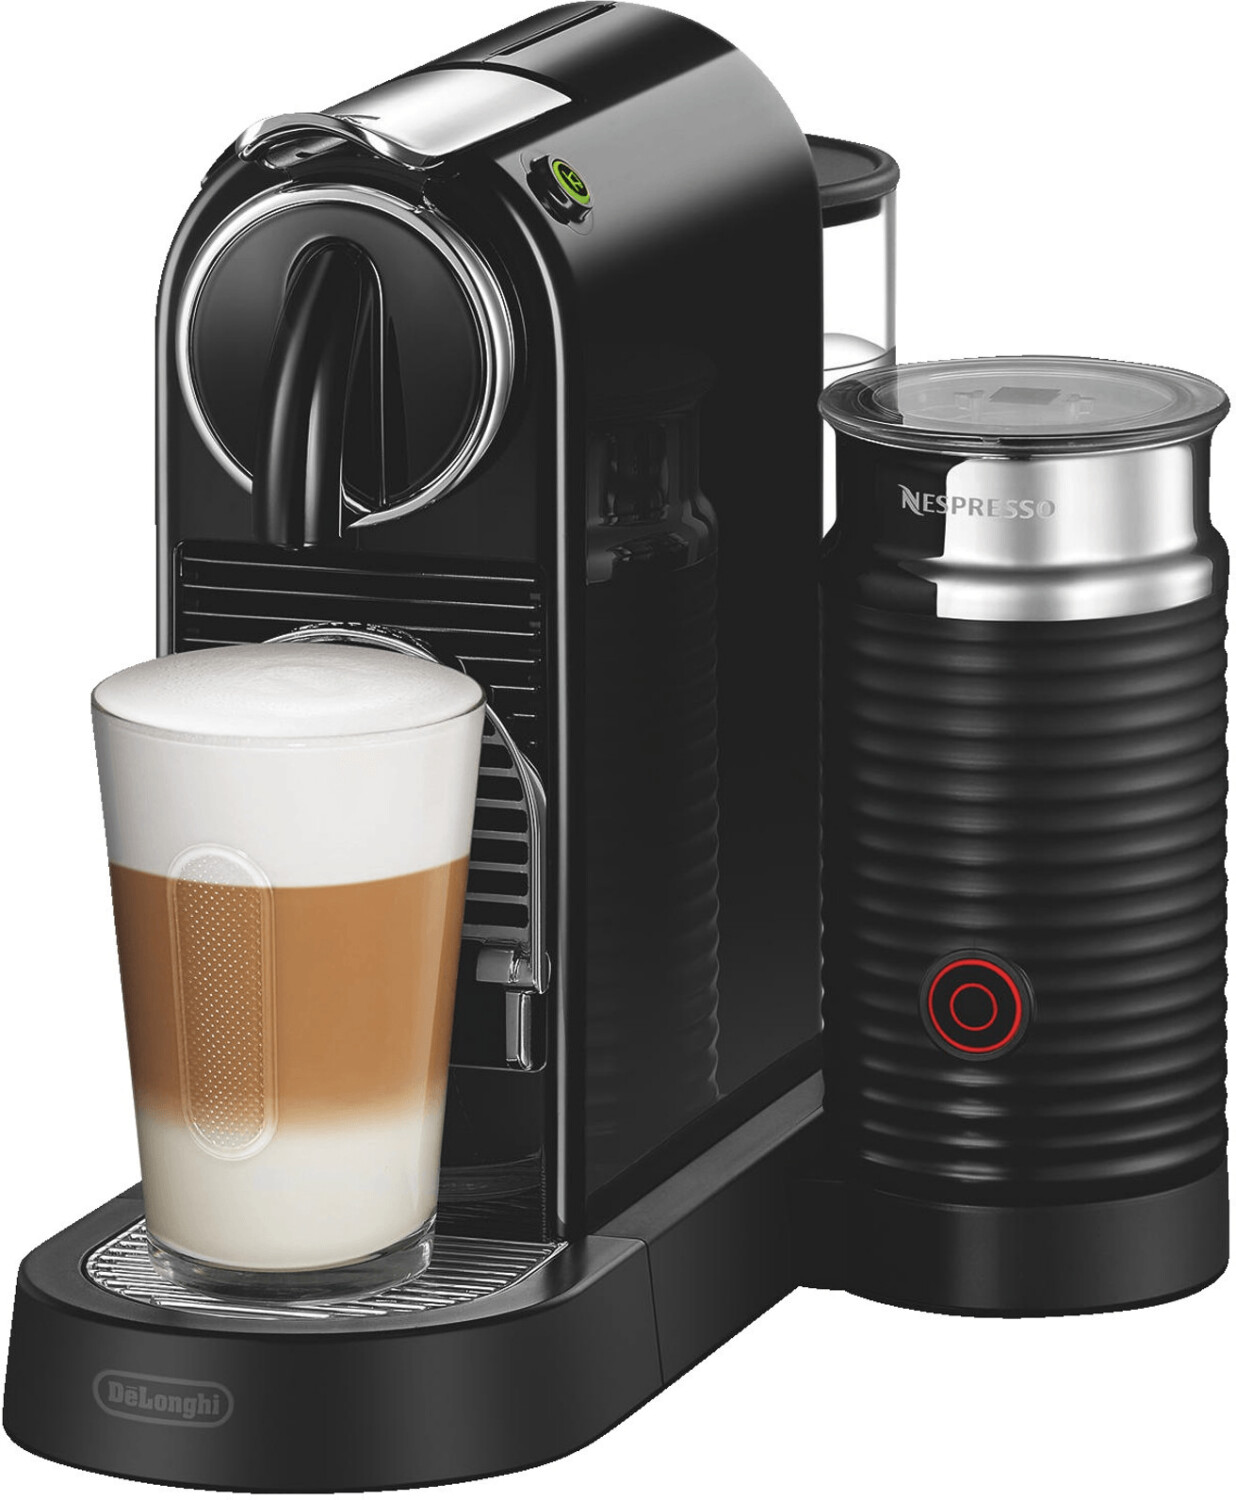 Macchina caffè Nespresso: prezzi e offerte su ePRICE